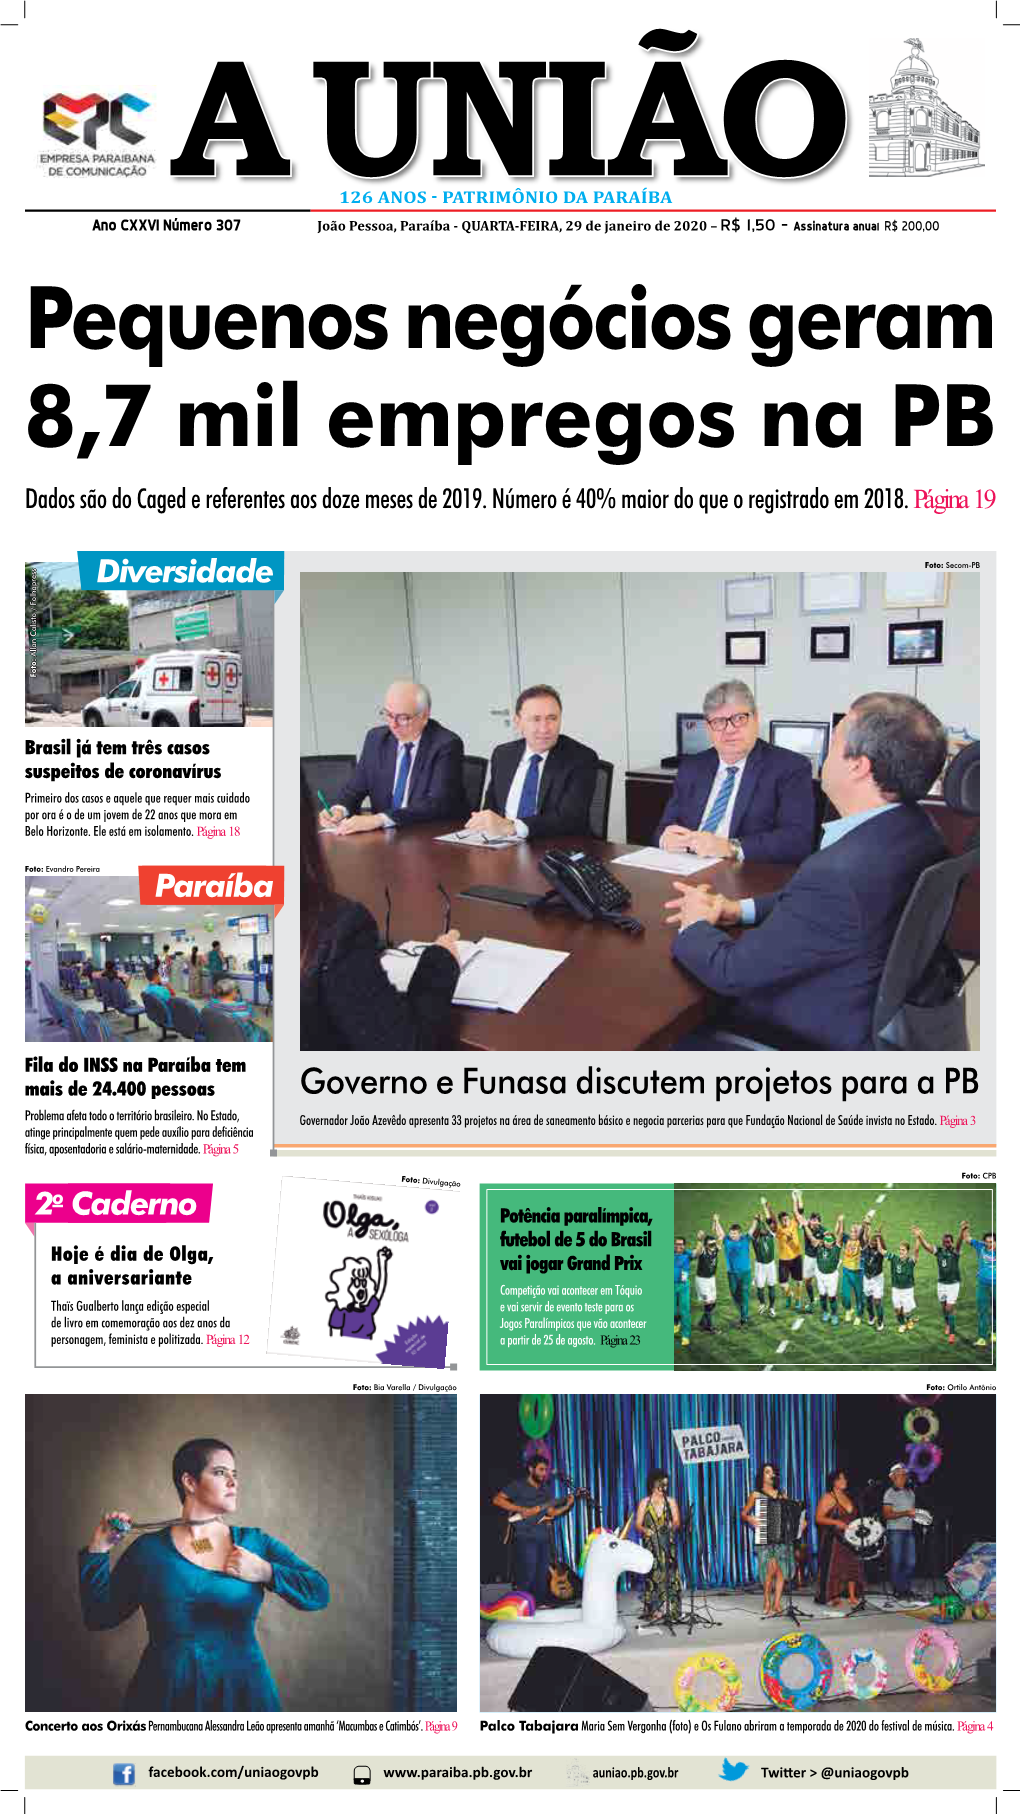 Governo E Funasa Discutem Projetos Para a PB Problema Afeta Todo O Território Brasileiro